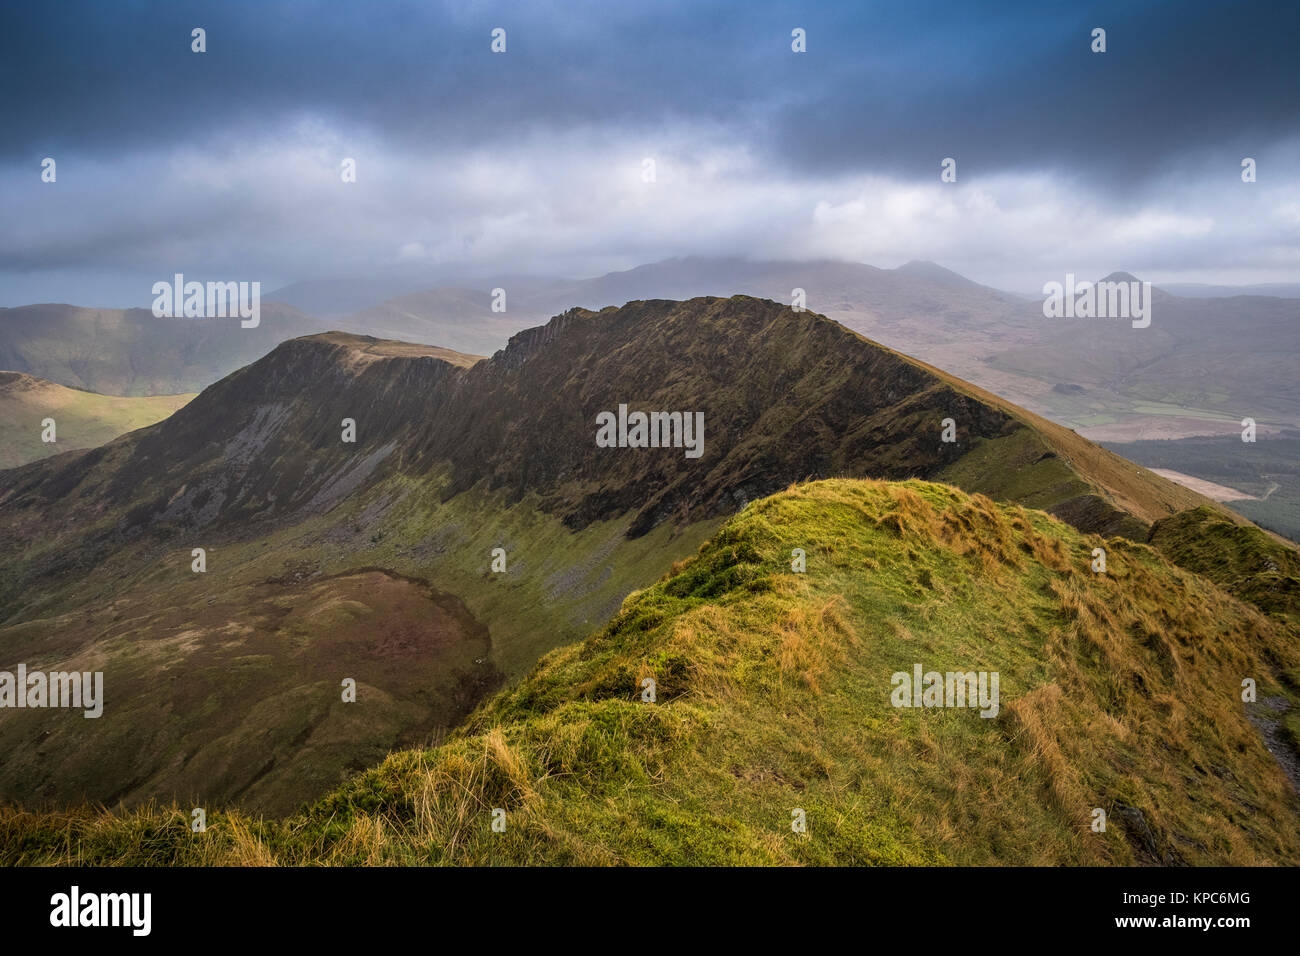 Mynydd Drws-y-Coed on The Nantlle Ridge Mountain Range, Snowdonia National Park, Wales, UK Stock Photo